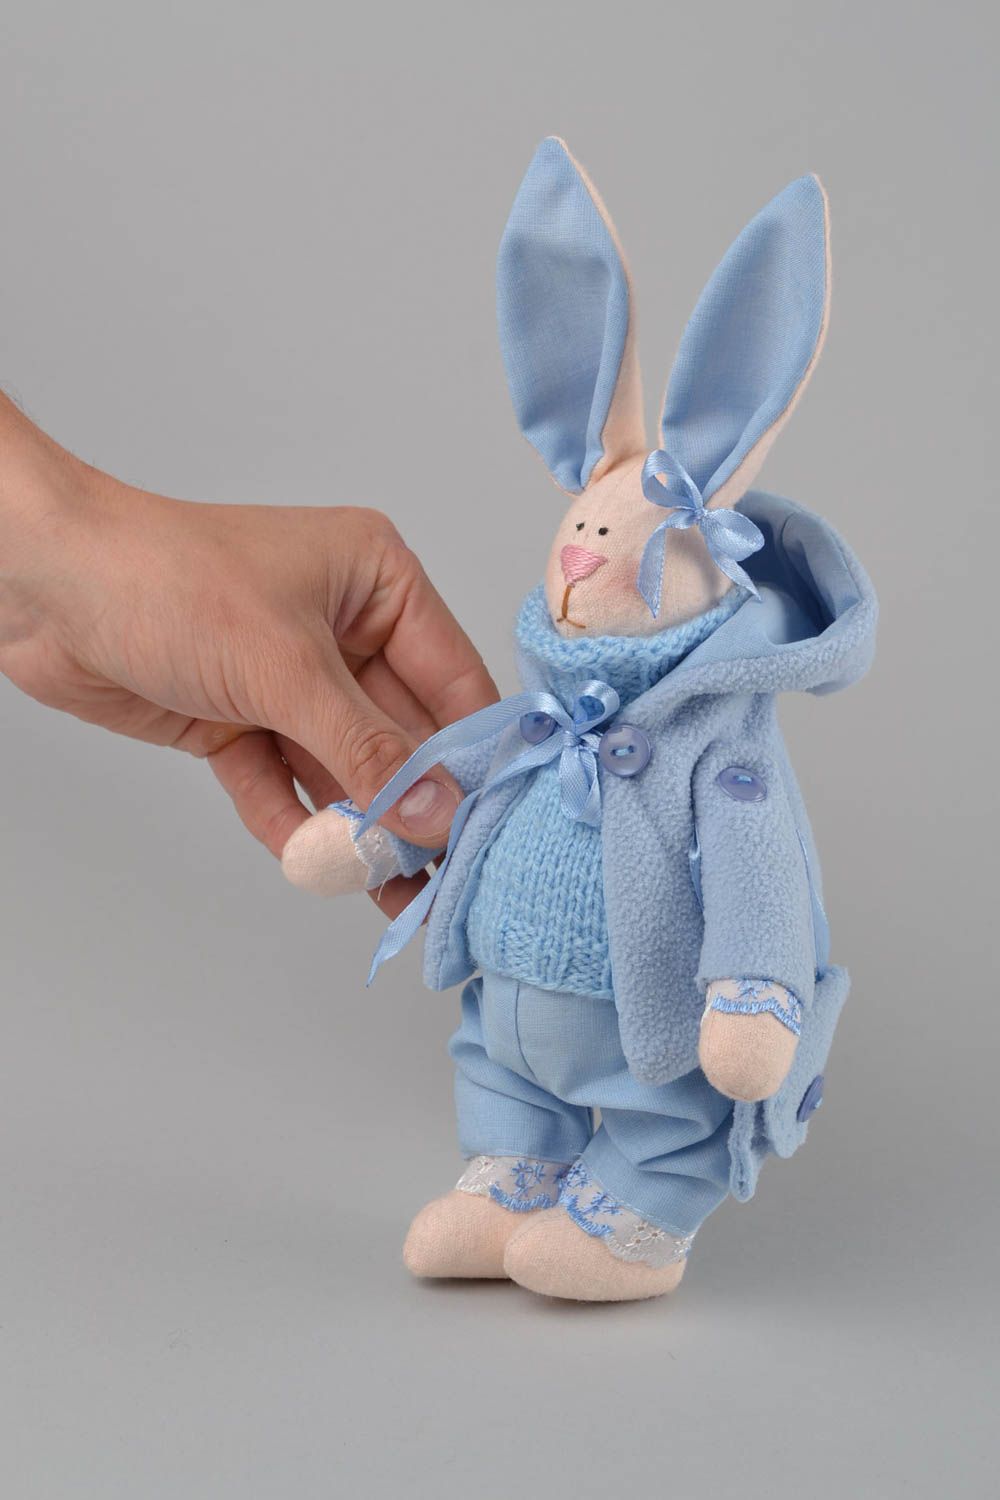 Textil Kuscheltier Hase im blauen Anzug handmade Schmuck für Haus Dekor  foto 2